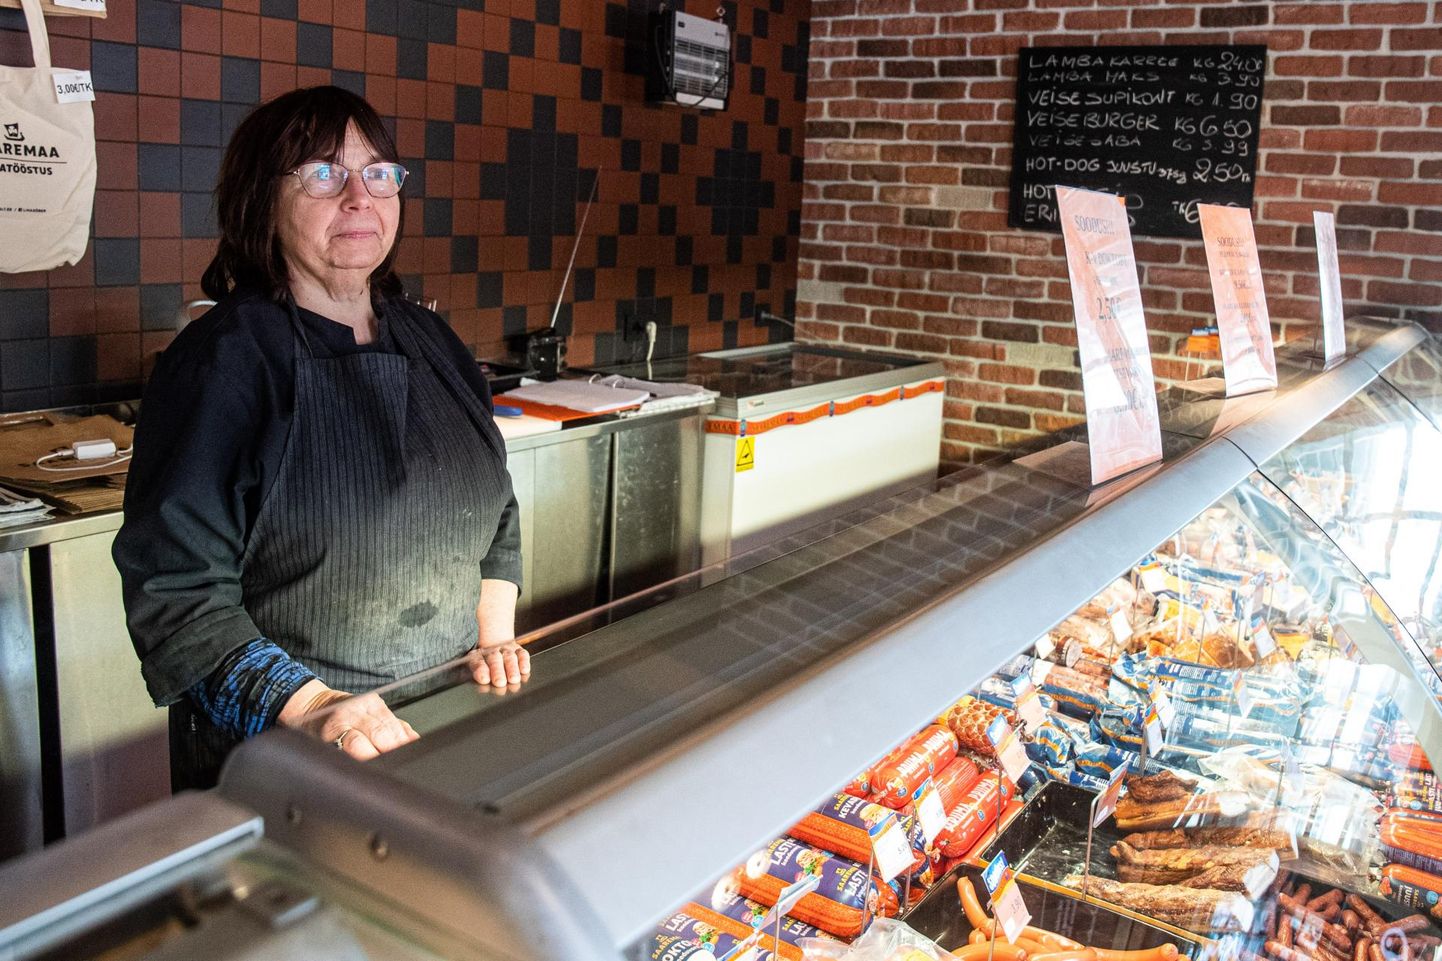 Saaremaa Lihatööstuse kioski müüja Mare hakkab lähiajal müüma ka Saaremaa piimatooteid, sest nendega kaubelnud ettevõtja jäi oma müügikohast ilma.